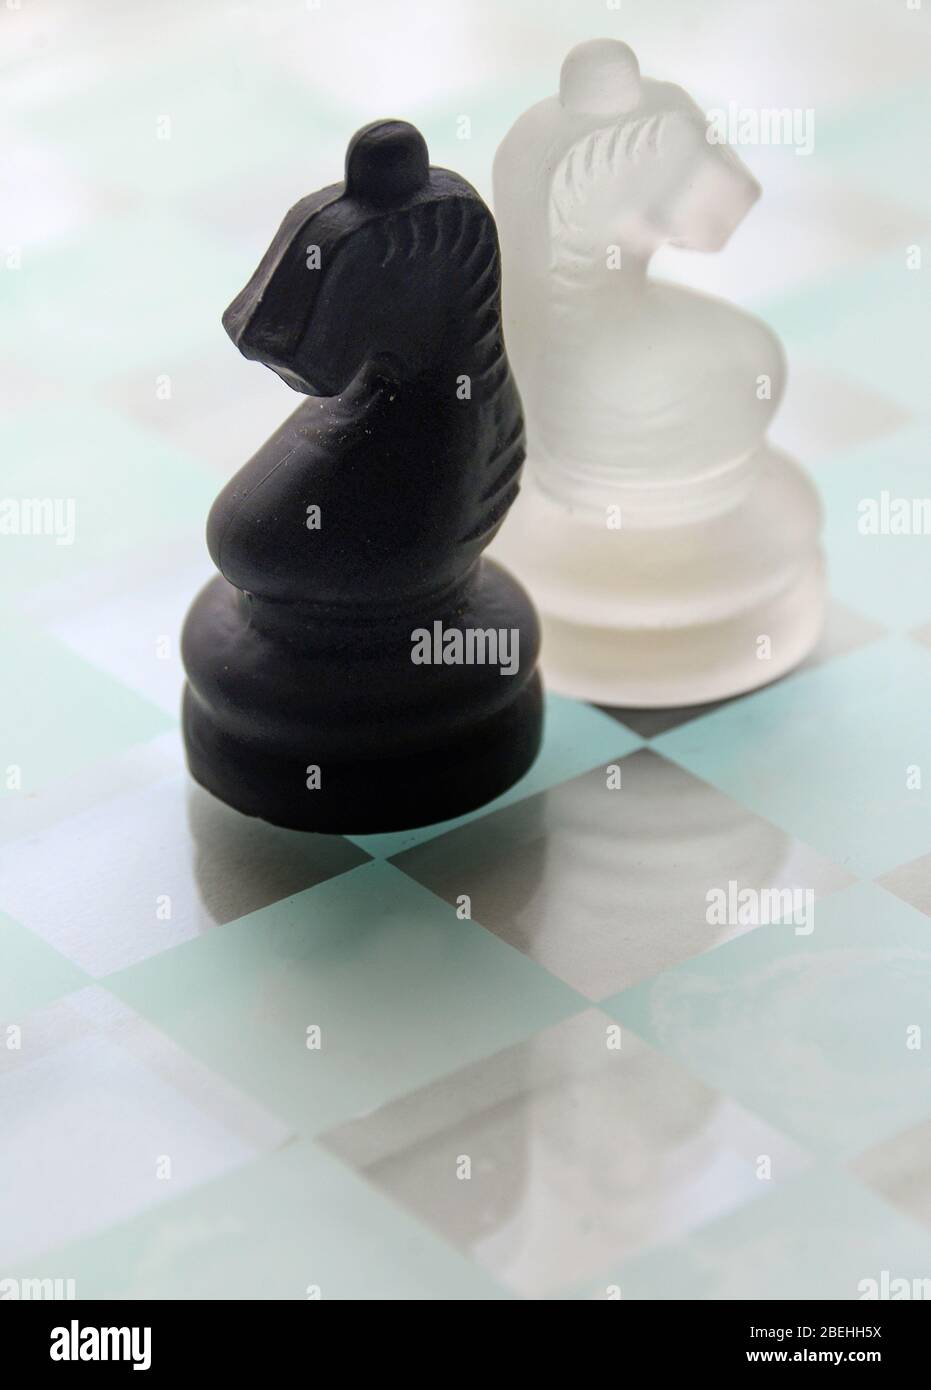 Piezas de ajedrez de caballero de cristal blanco y negro sobre tablero de cristal. Foto de stock